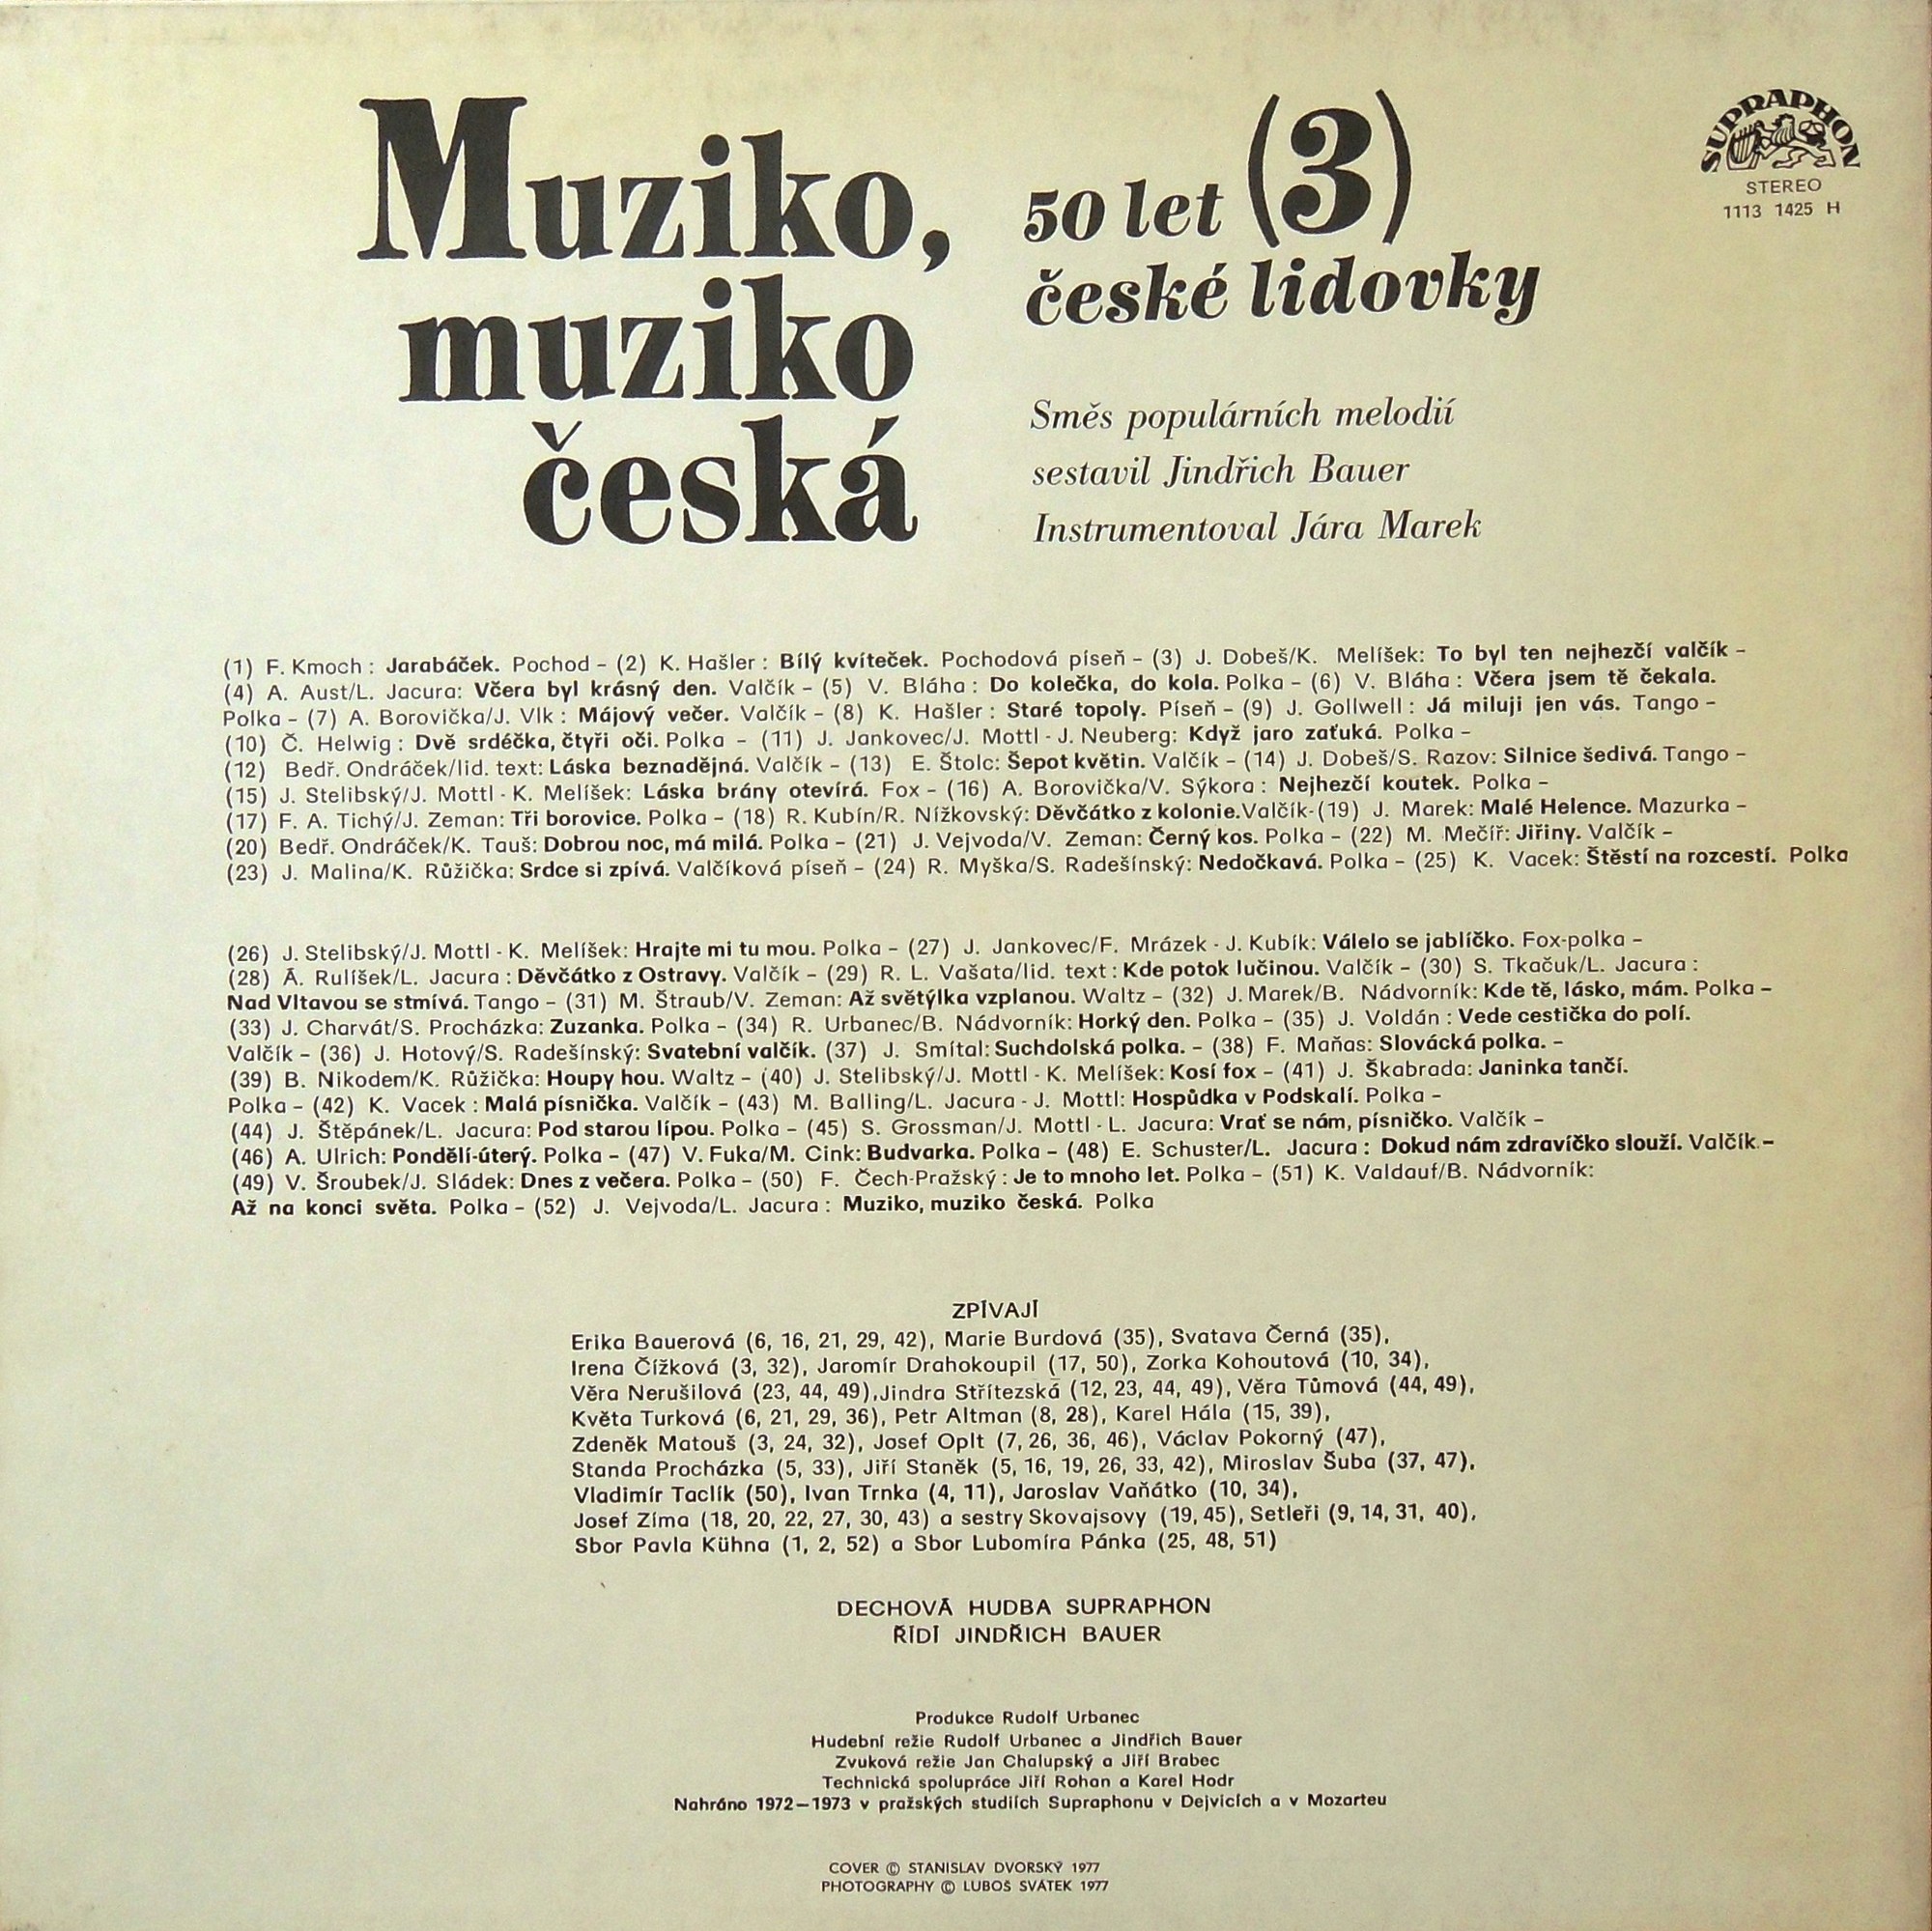 Muziko, muziko ceska. 50 let české lidovky. Vol.3 [по заказу чешской фирмы SUPRAPHON 1113 1425]